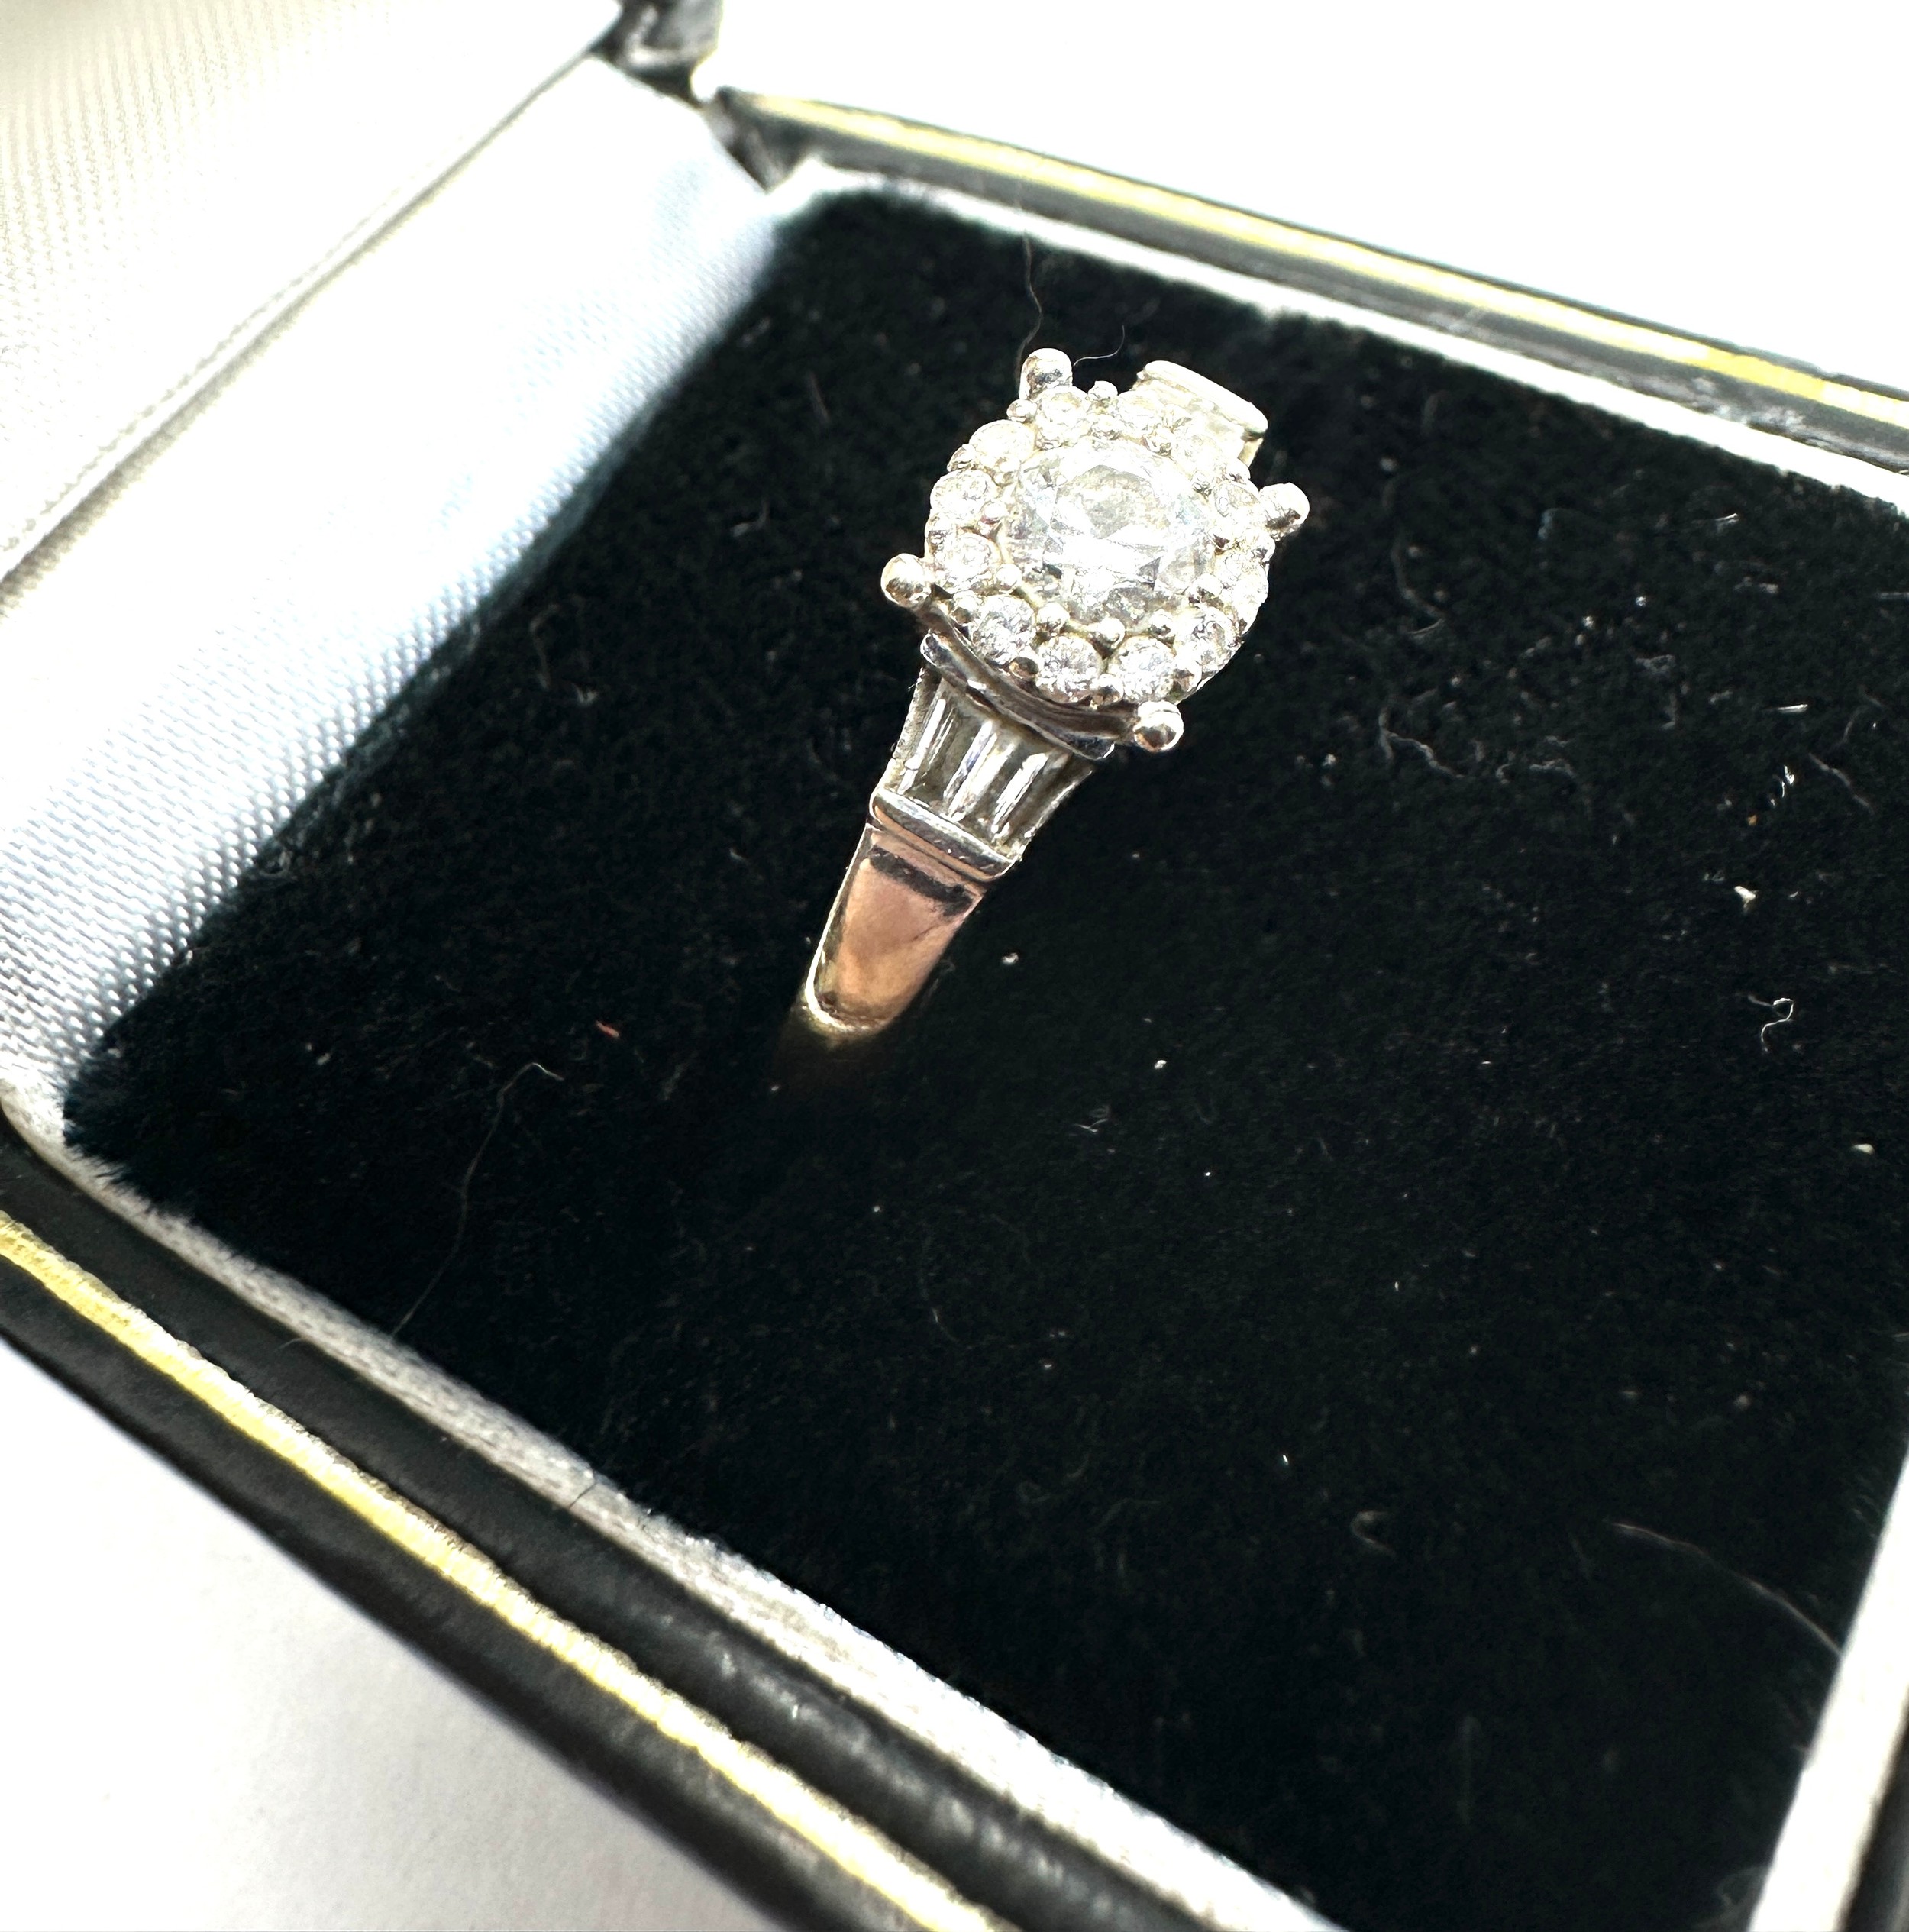 18ct white gold diamond ring 0.41ct diamonds weight 2.7g - Image 2 of 4